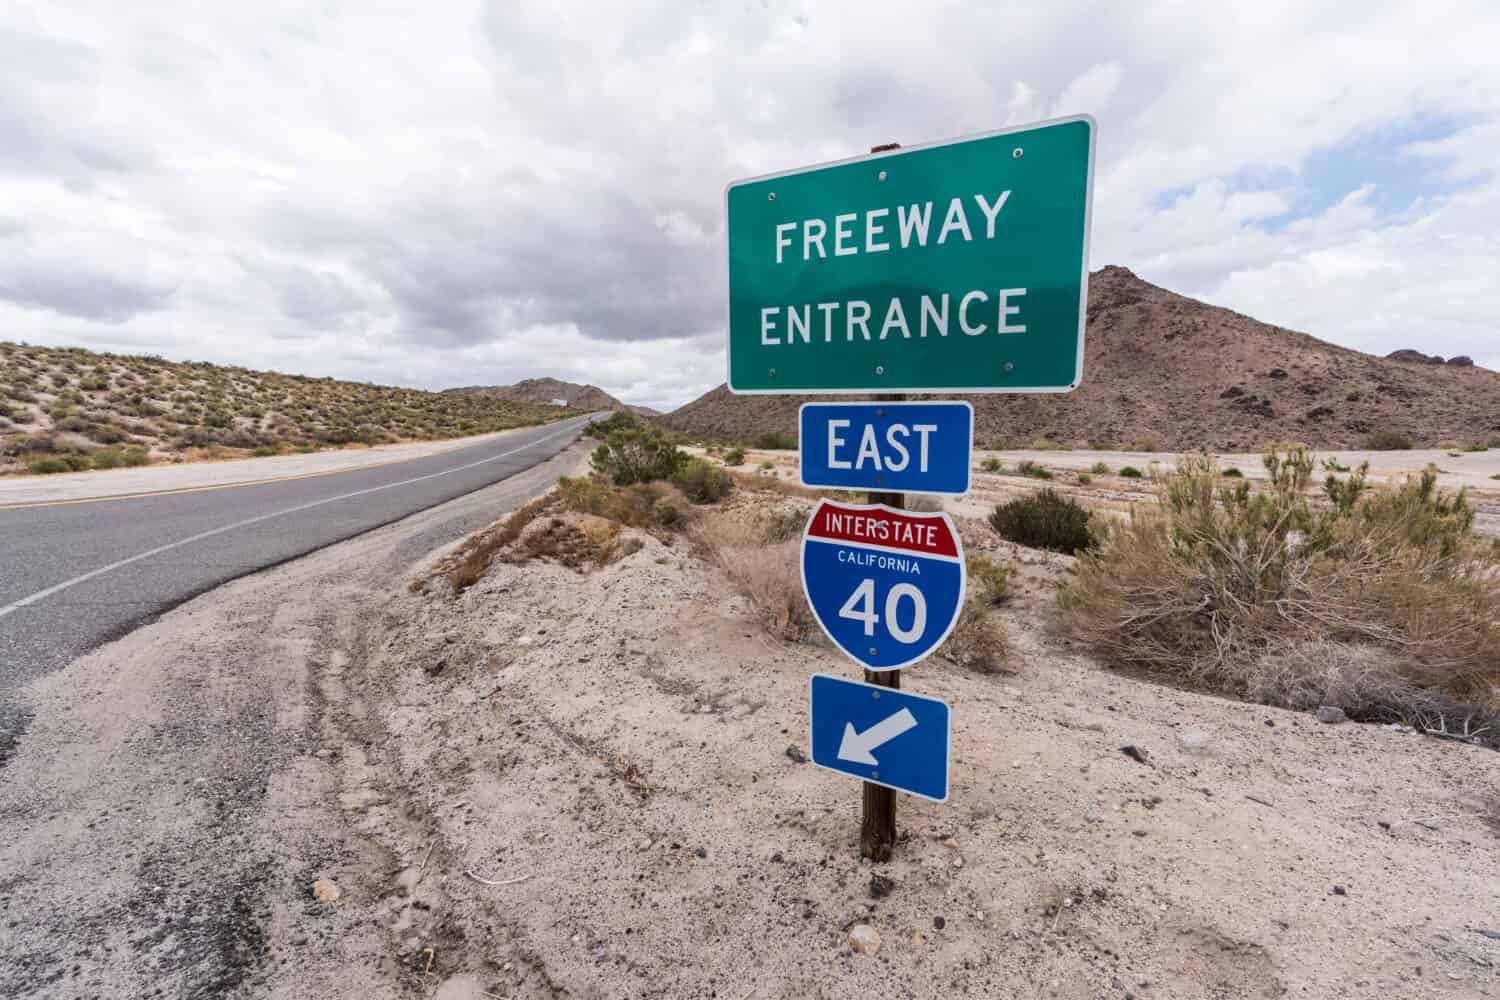 Interstate 40 autostrada est sul cartello della rampa vicino alla Mojave National Preserve nella California meridionale.